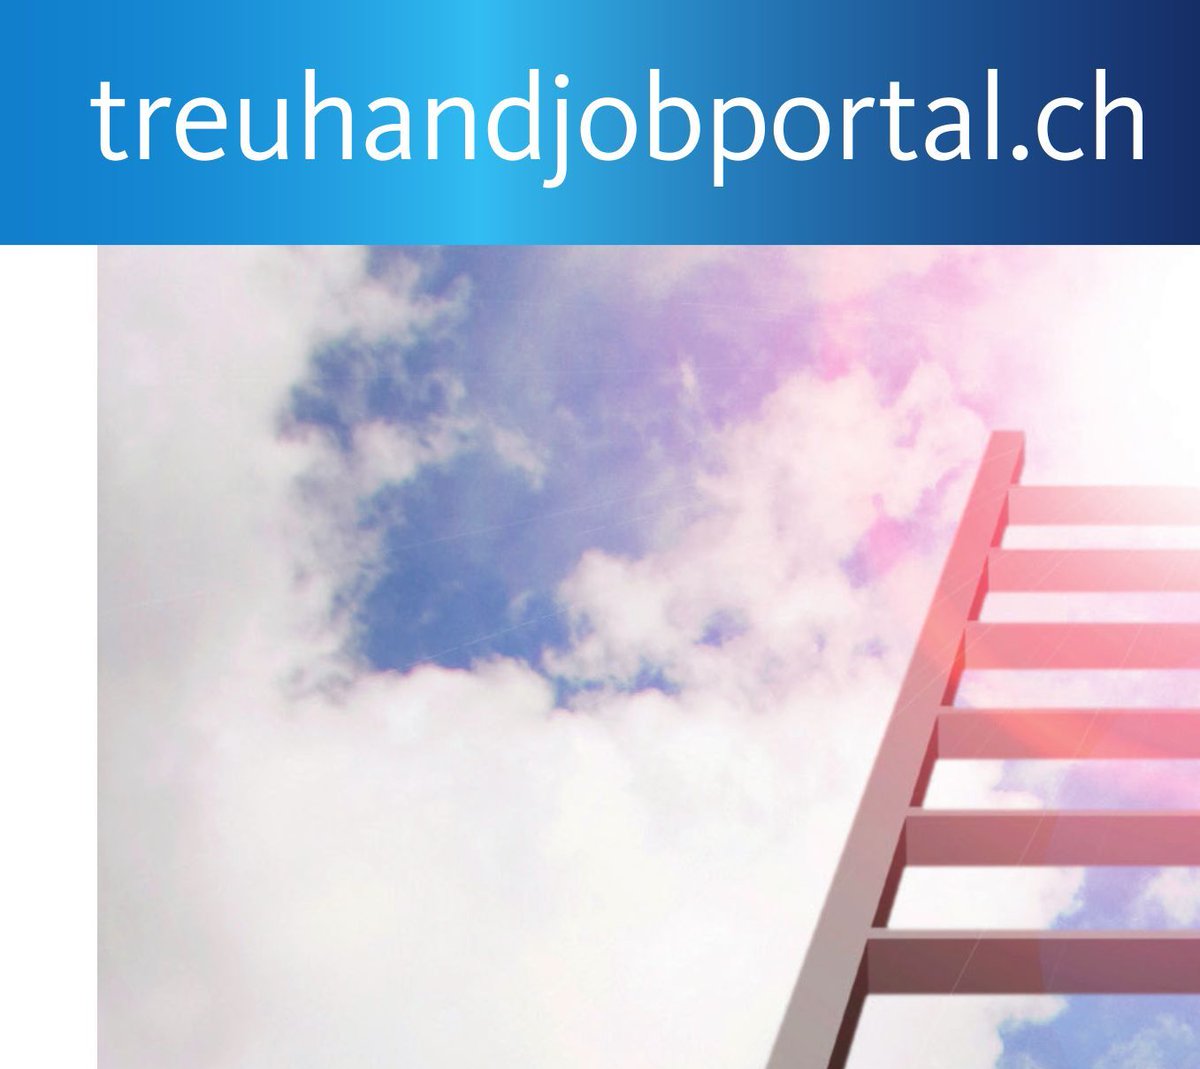 Sie suchen einen neuen Treuhandjob? Sie suchen einen kompetenten Treuhandprofi? treuhandjobportal.ch  – Die Jobplattform für die Treuhandbranche mit Vorzugskonditionen für Mitglieder von TREUHAND|SUISSE.

#Treuhand #Job